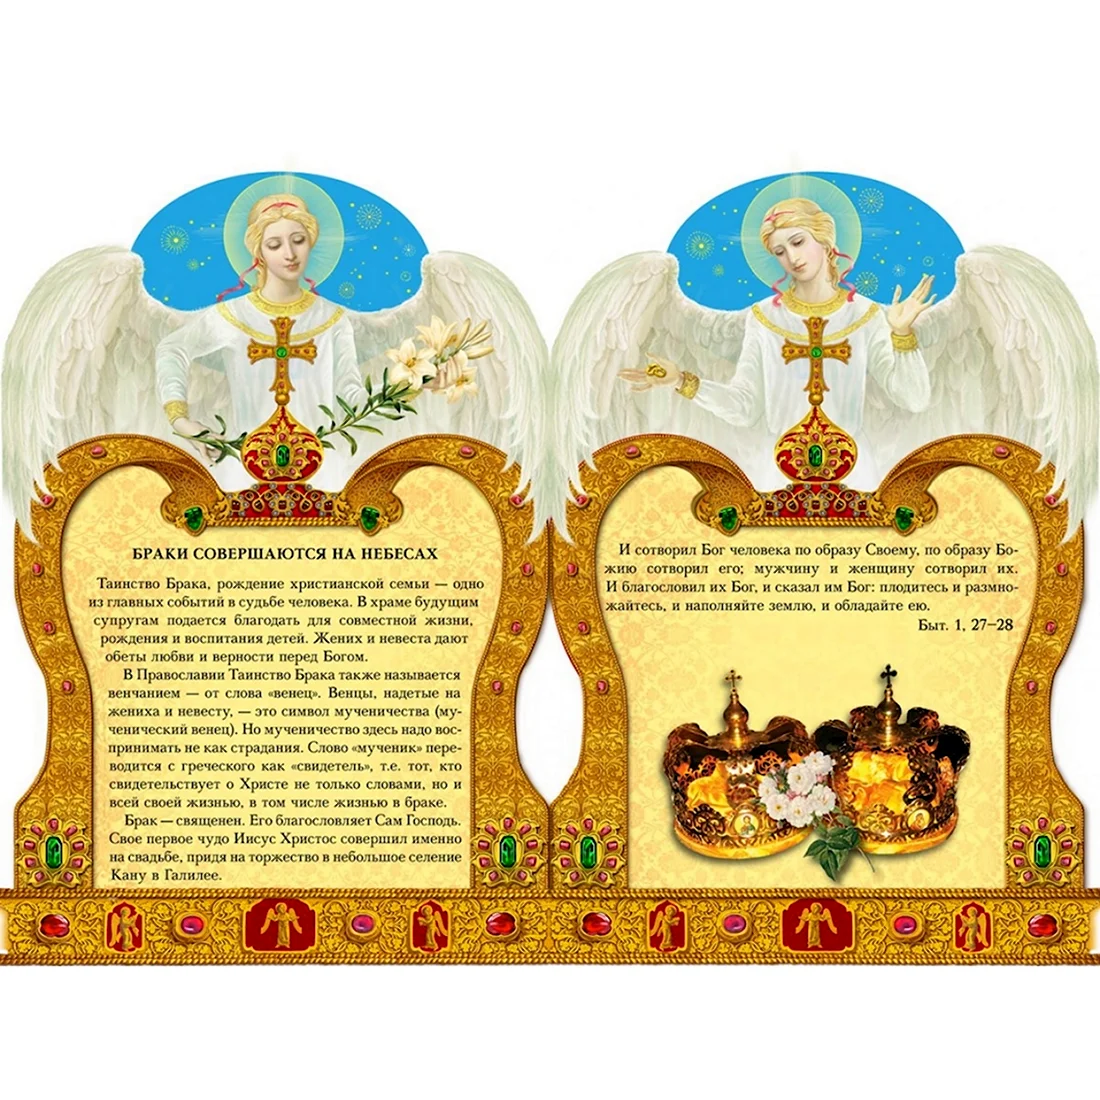 Православное поздравление с днем свадьбы. Свадебная открытка